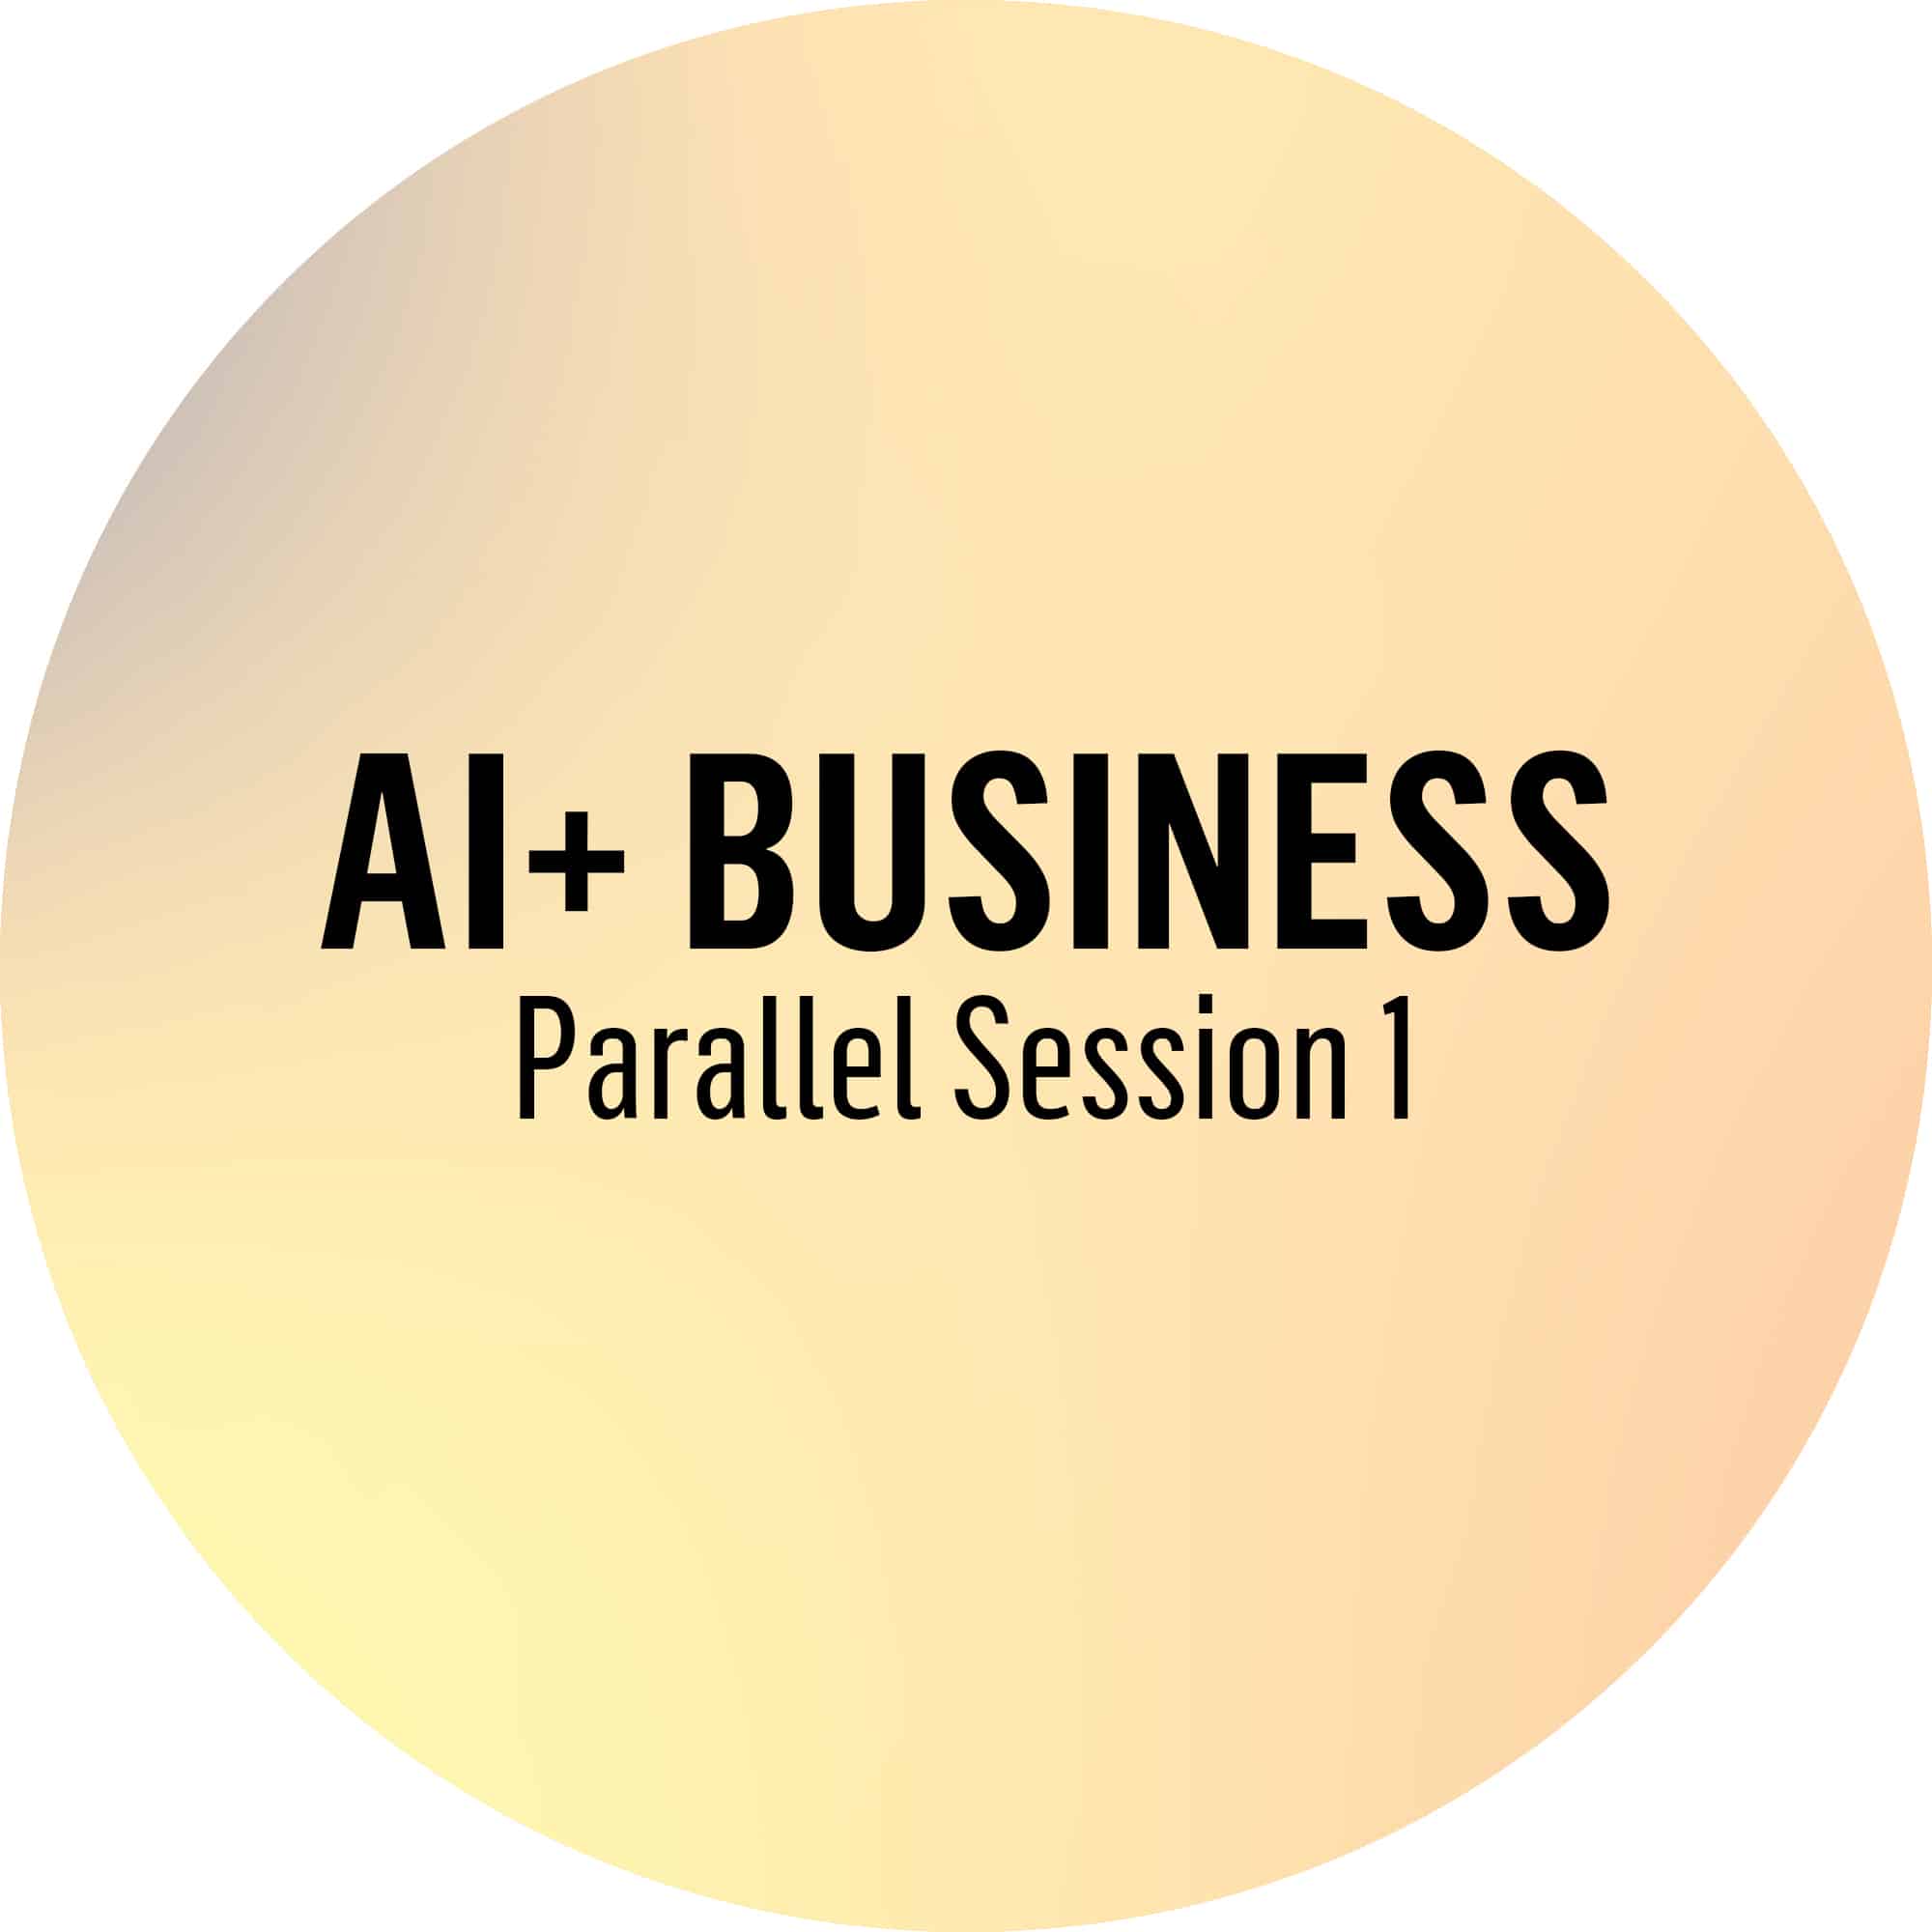 AI+ Business